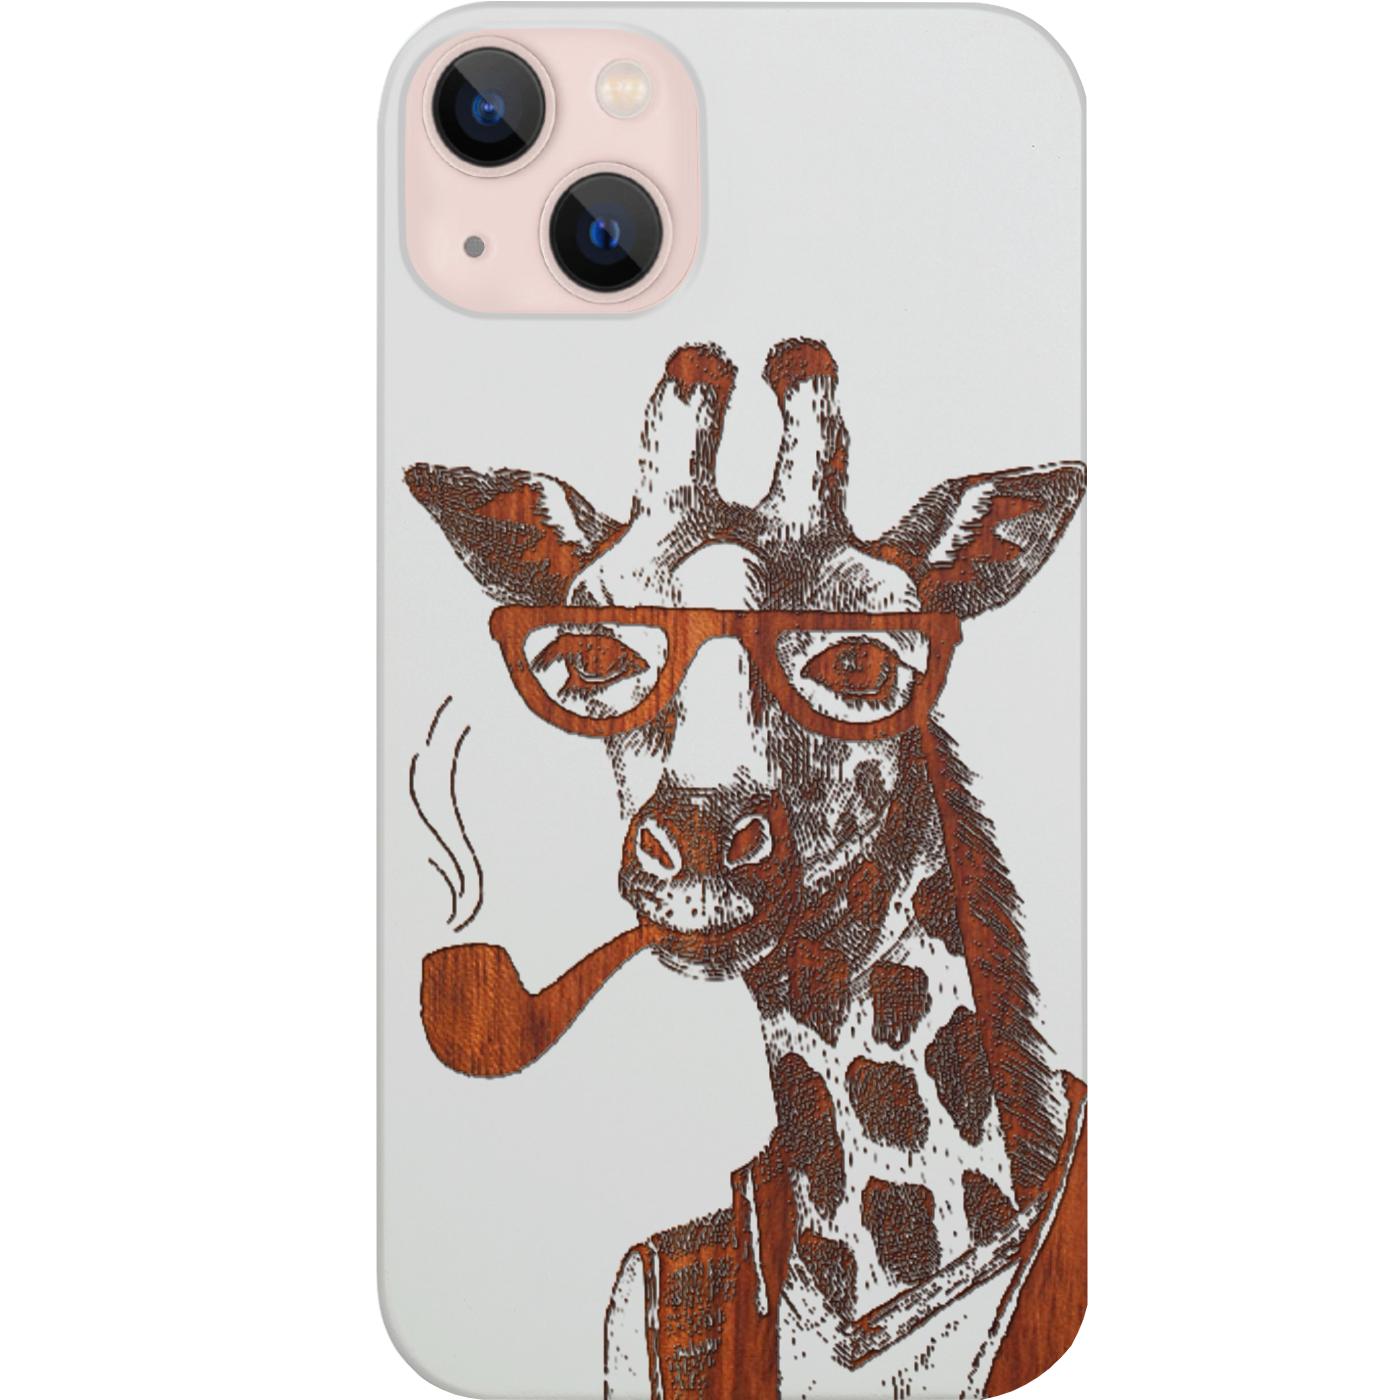 Smoking Giraffe - Engraved Phone Case